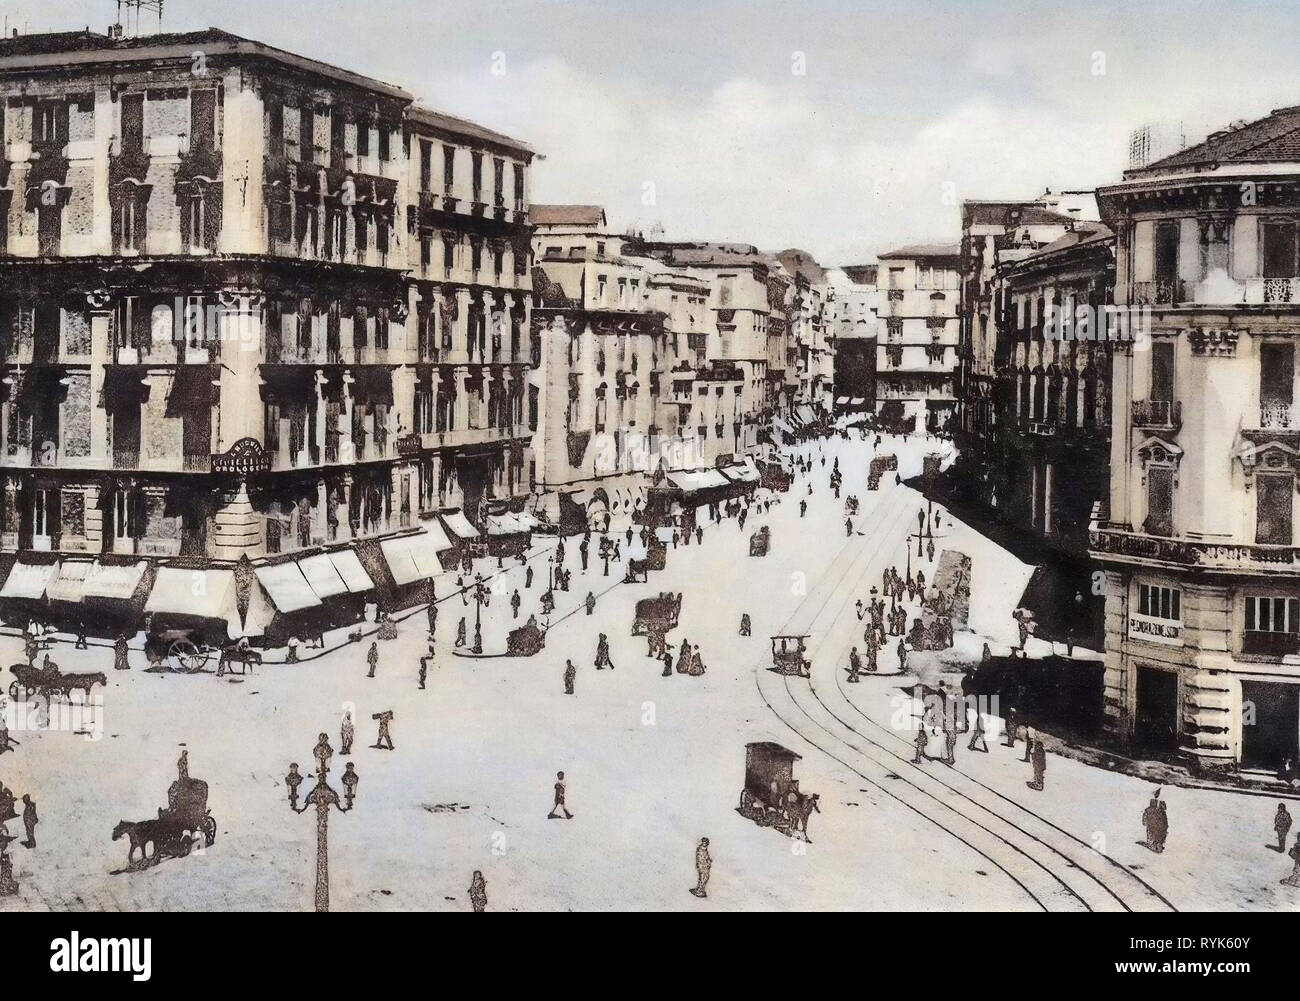 Immagini storiche di via Medina (Napoli), carrozze trainate da cavalli in Italia, Napoli, 1901, Via Medina Foto Stock